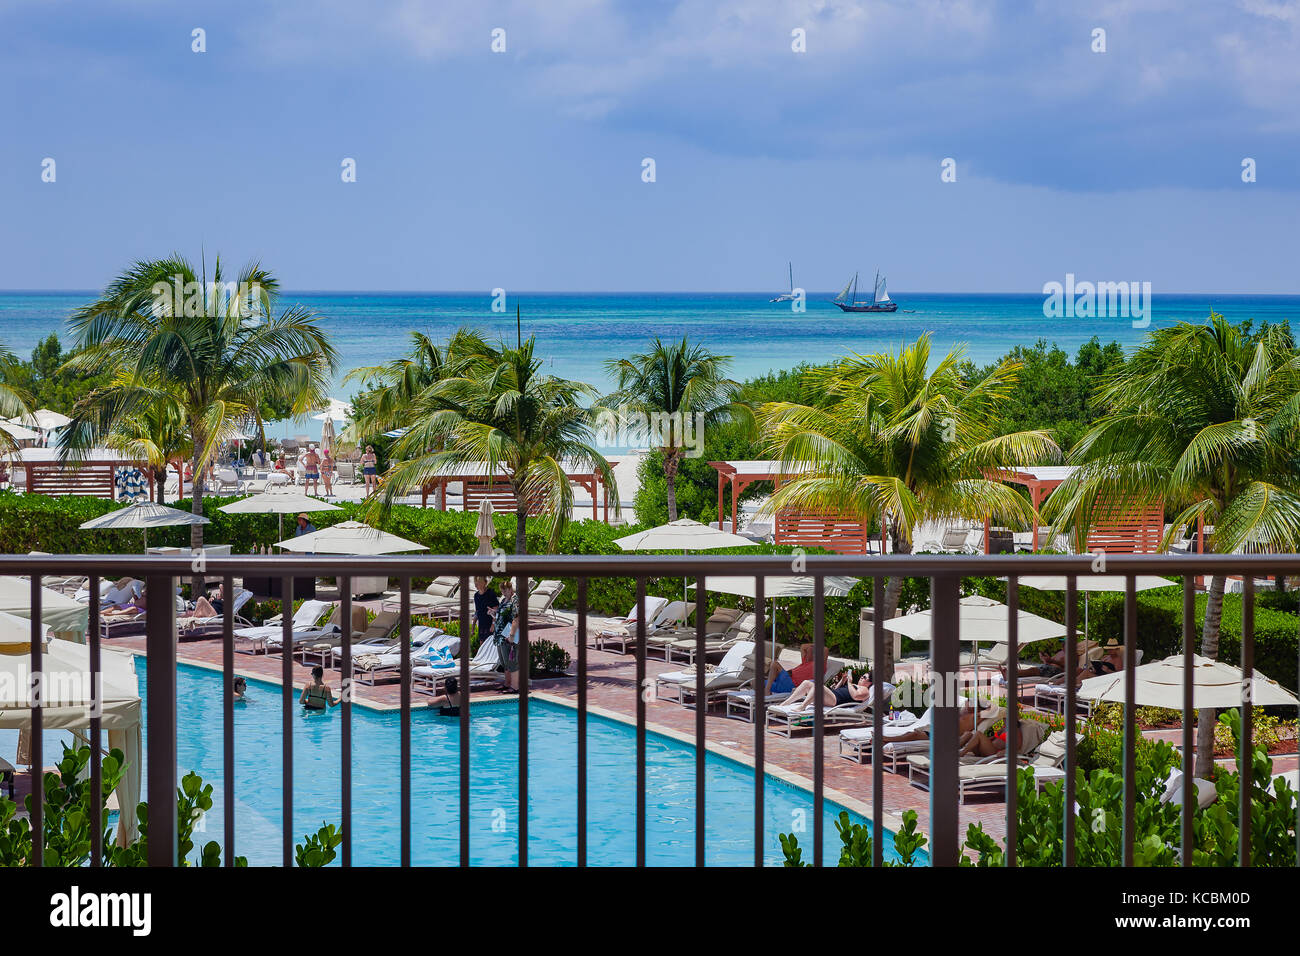 Aruba - EIN Blick auf die Südkaribische See von Palm Beach auf der Insel Aruba. Vordergrund: Coconut Palms und ein Teil des Ritz-Carlton Hotels Stockfoto